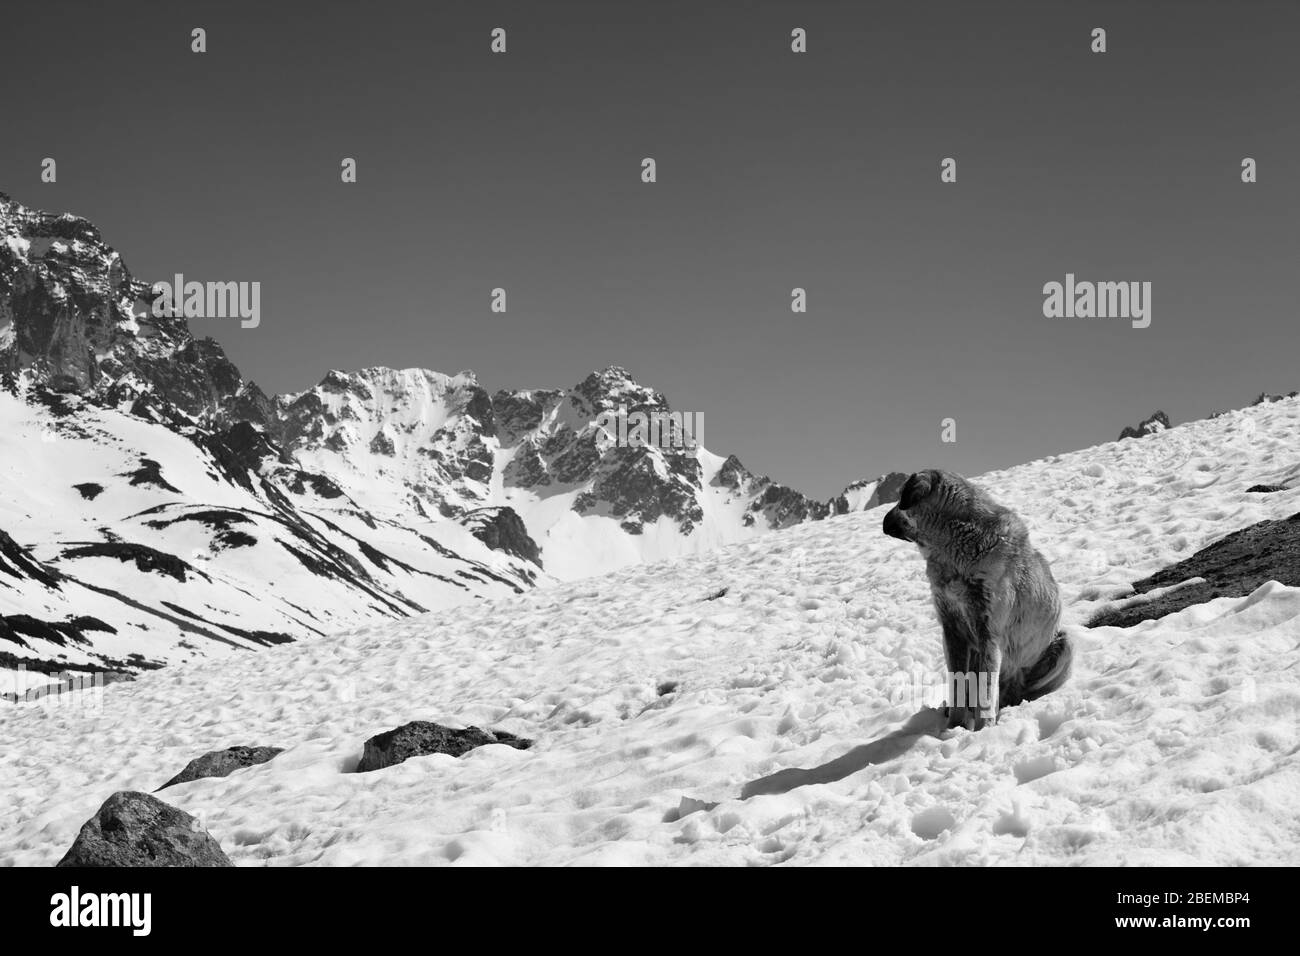 Cane seduto sulla neve in giornata di sole e guardare indietro le alte montagne innevate. Turchia, Kachkar Mountains, la parte più alta delle montagne Pontiche. Bianco e nero t Foto Stock